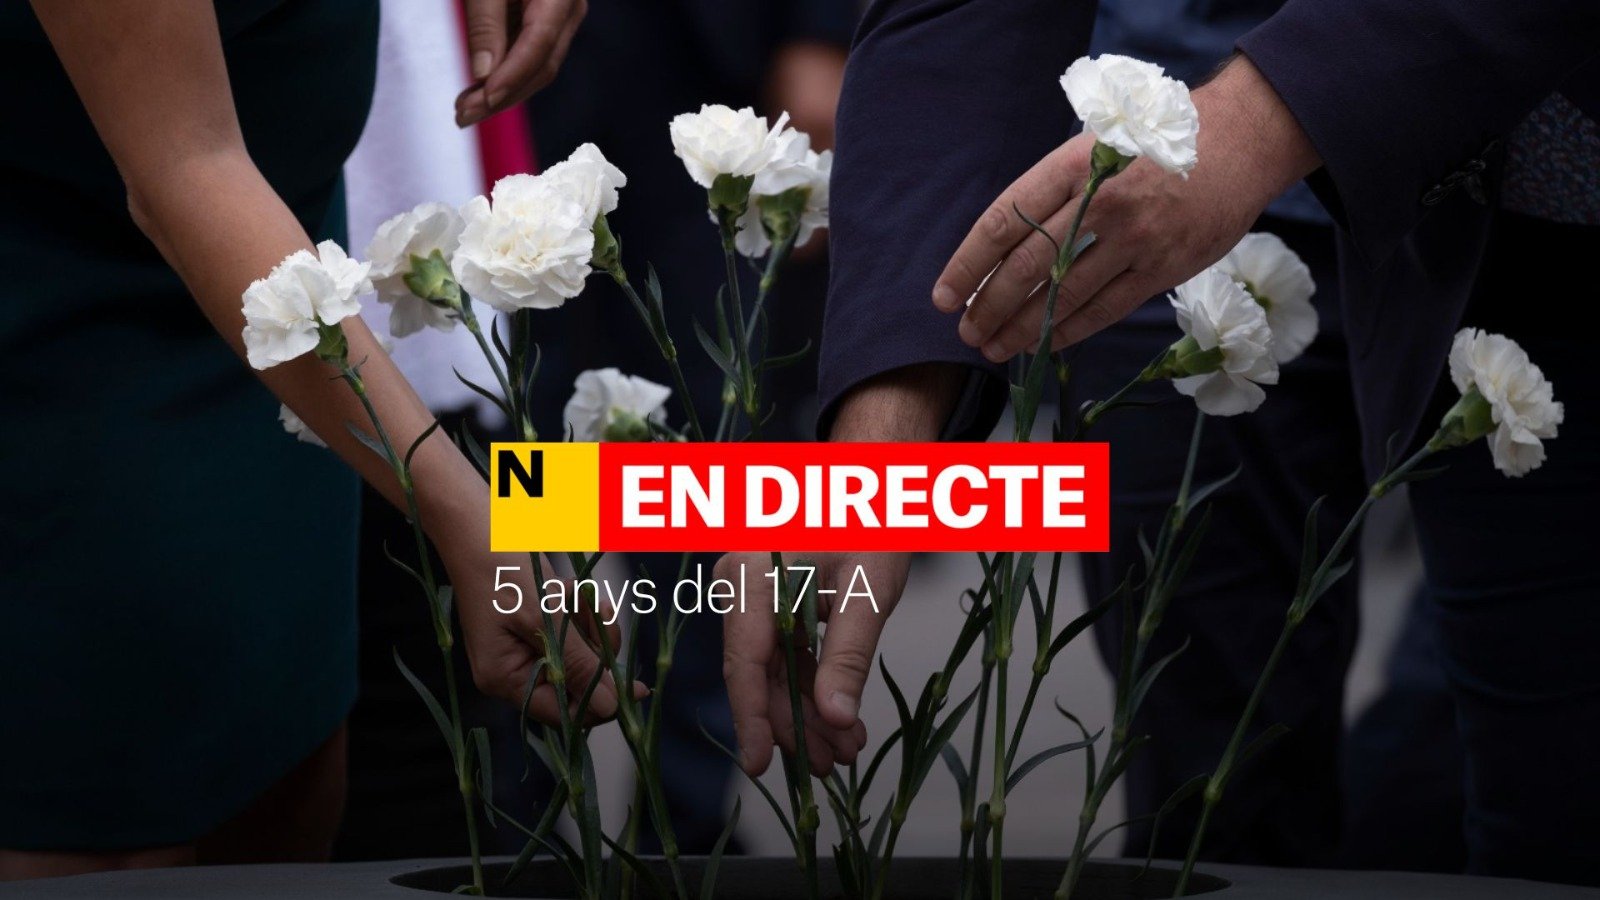 Barcelona conmemora los 5 años de los atentados del 17-A | DIRECTO